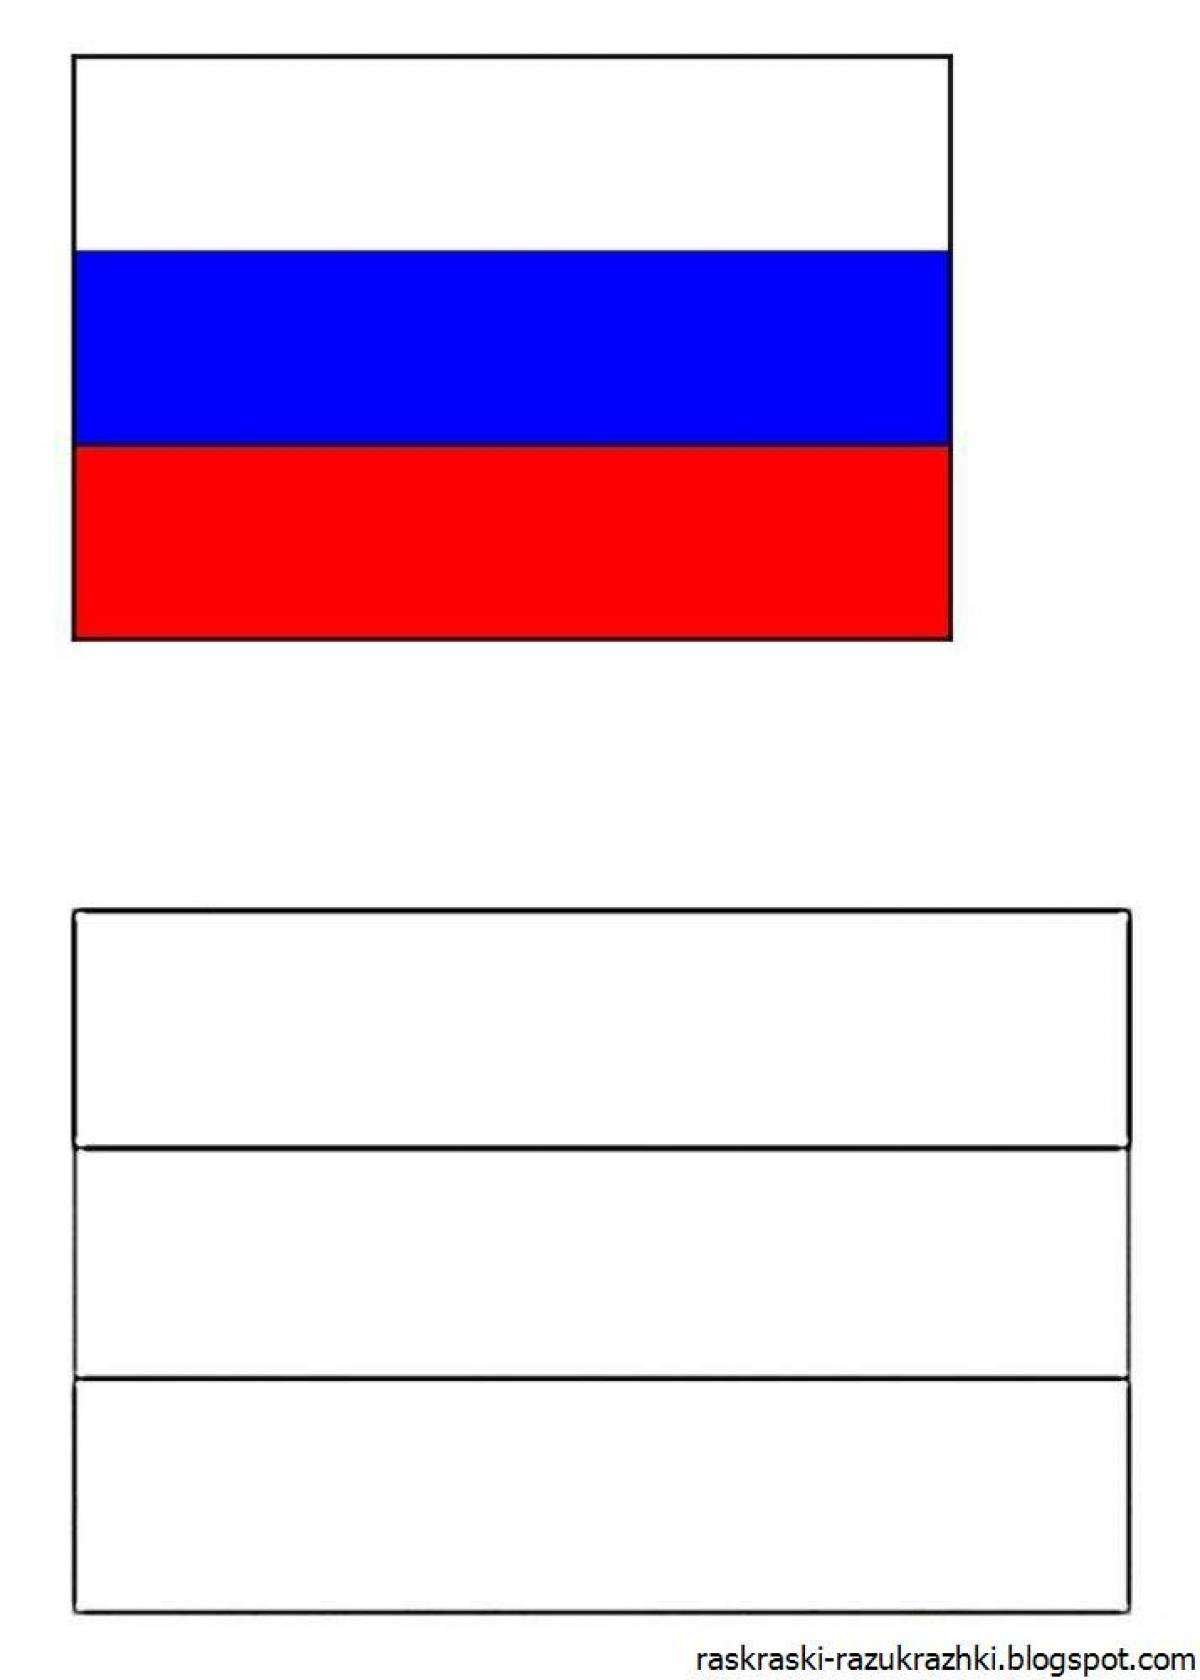 Жирный российский флаг раскраски для детей